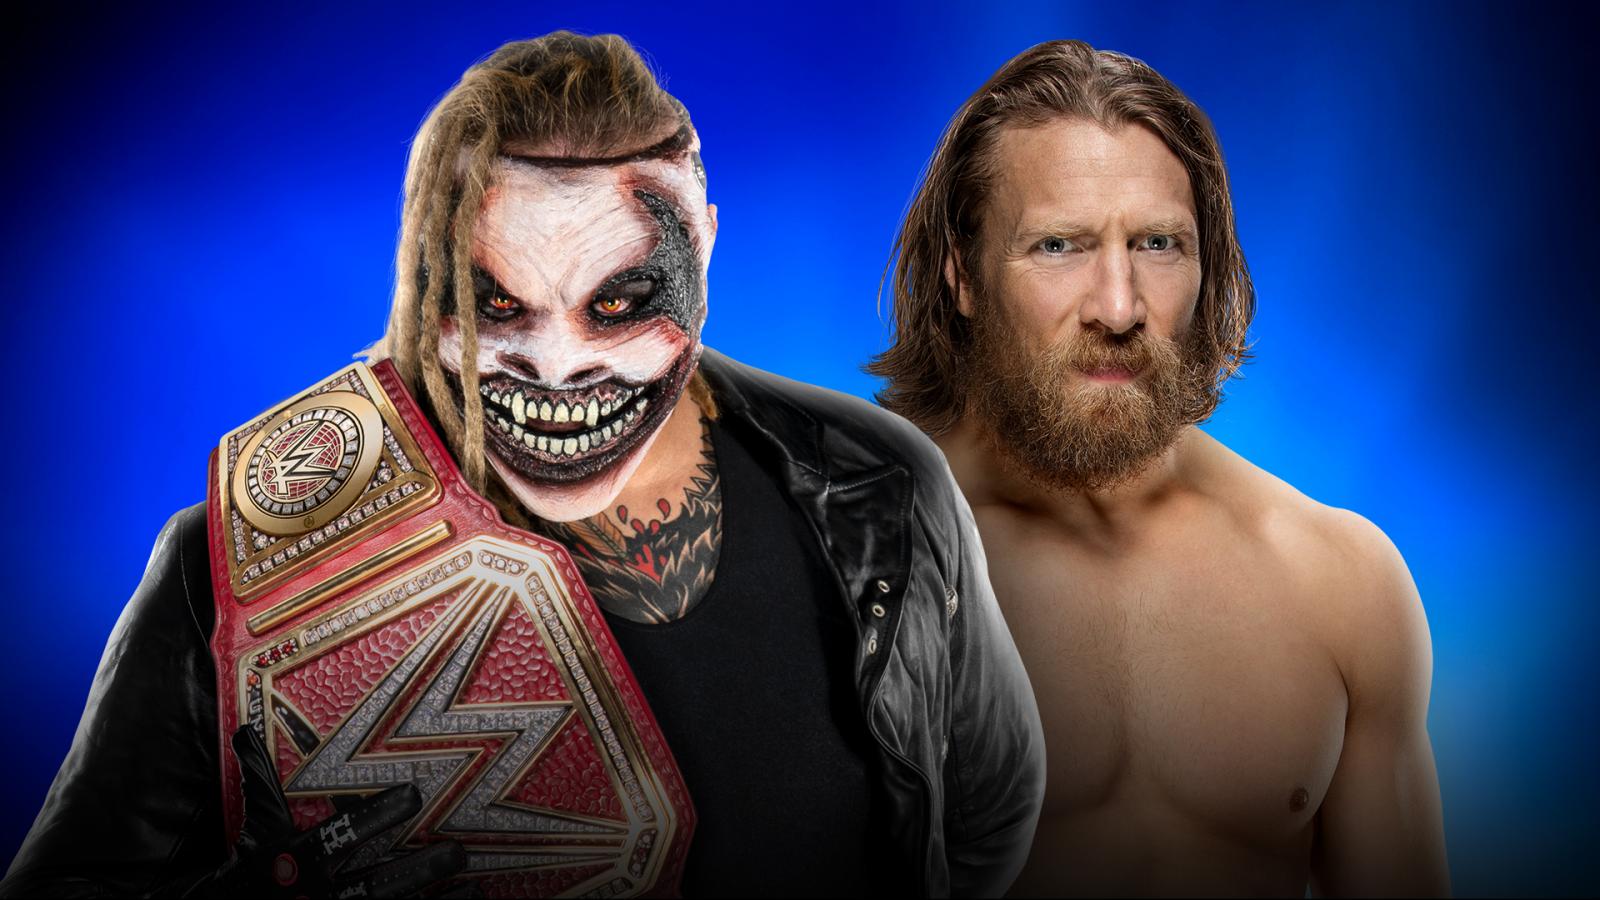 Universal Champion The Fiend Bray Wyatt vs Daniel Bryan - WWE Survivor Series 2019